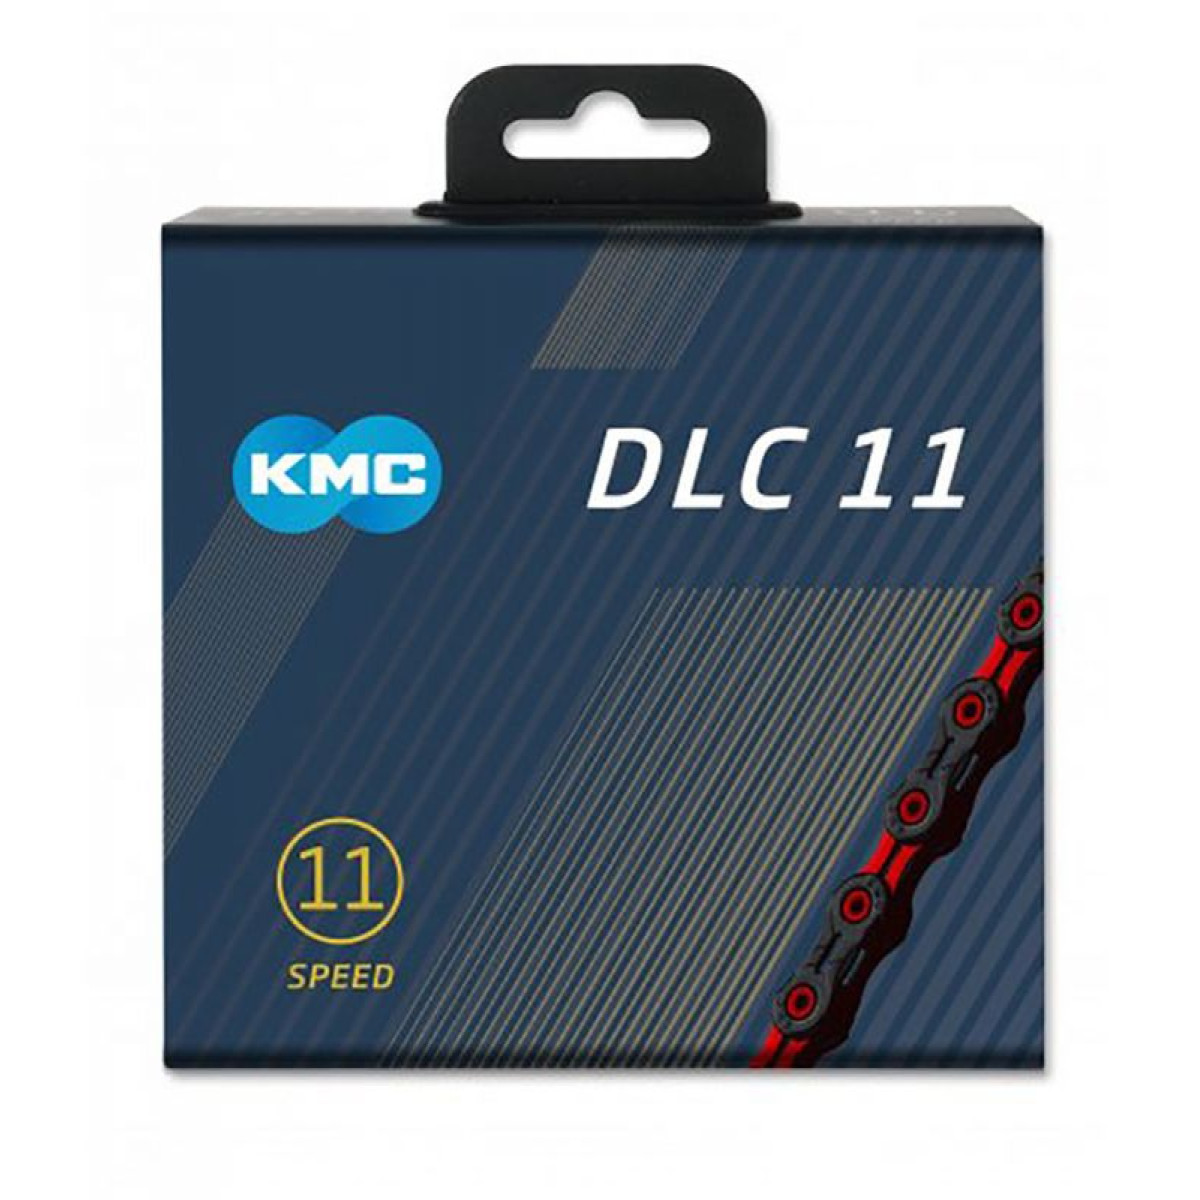 KMC DLC11 grandinė / 11 pavarų / Black - Pink